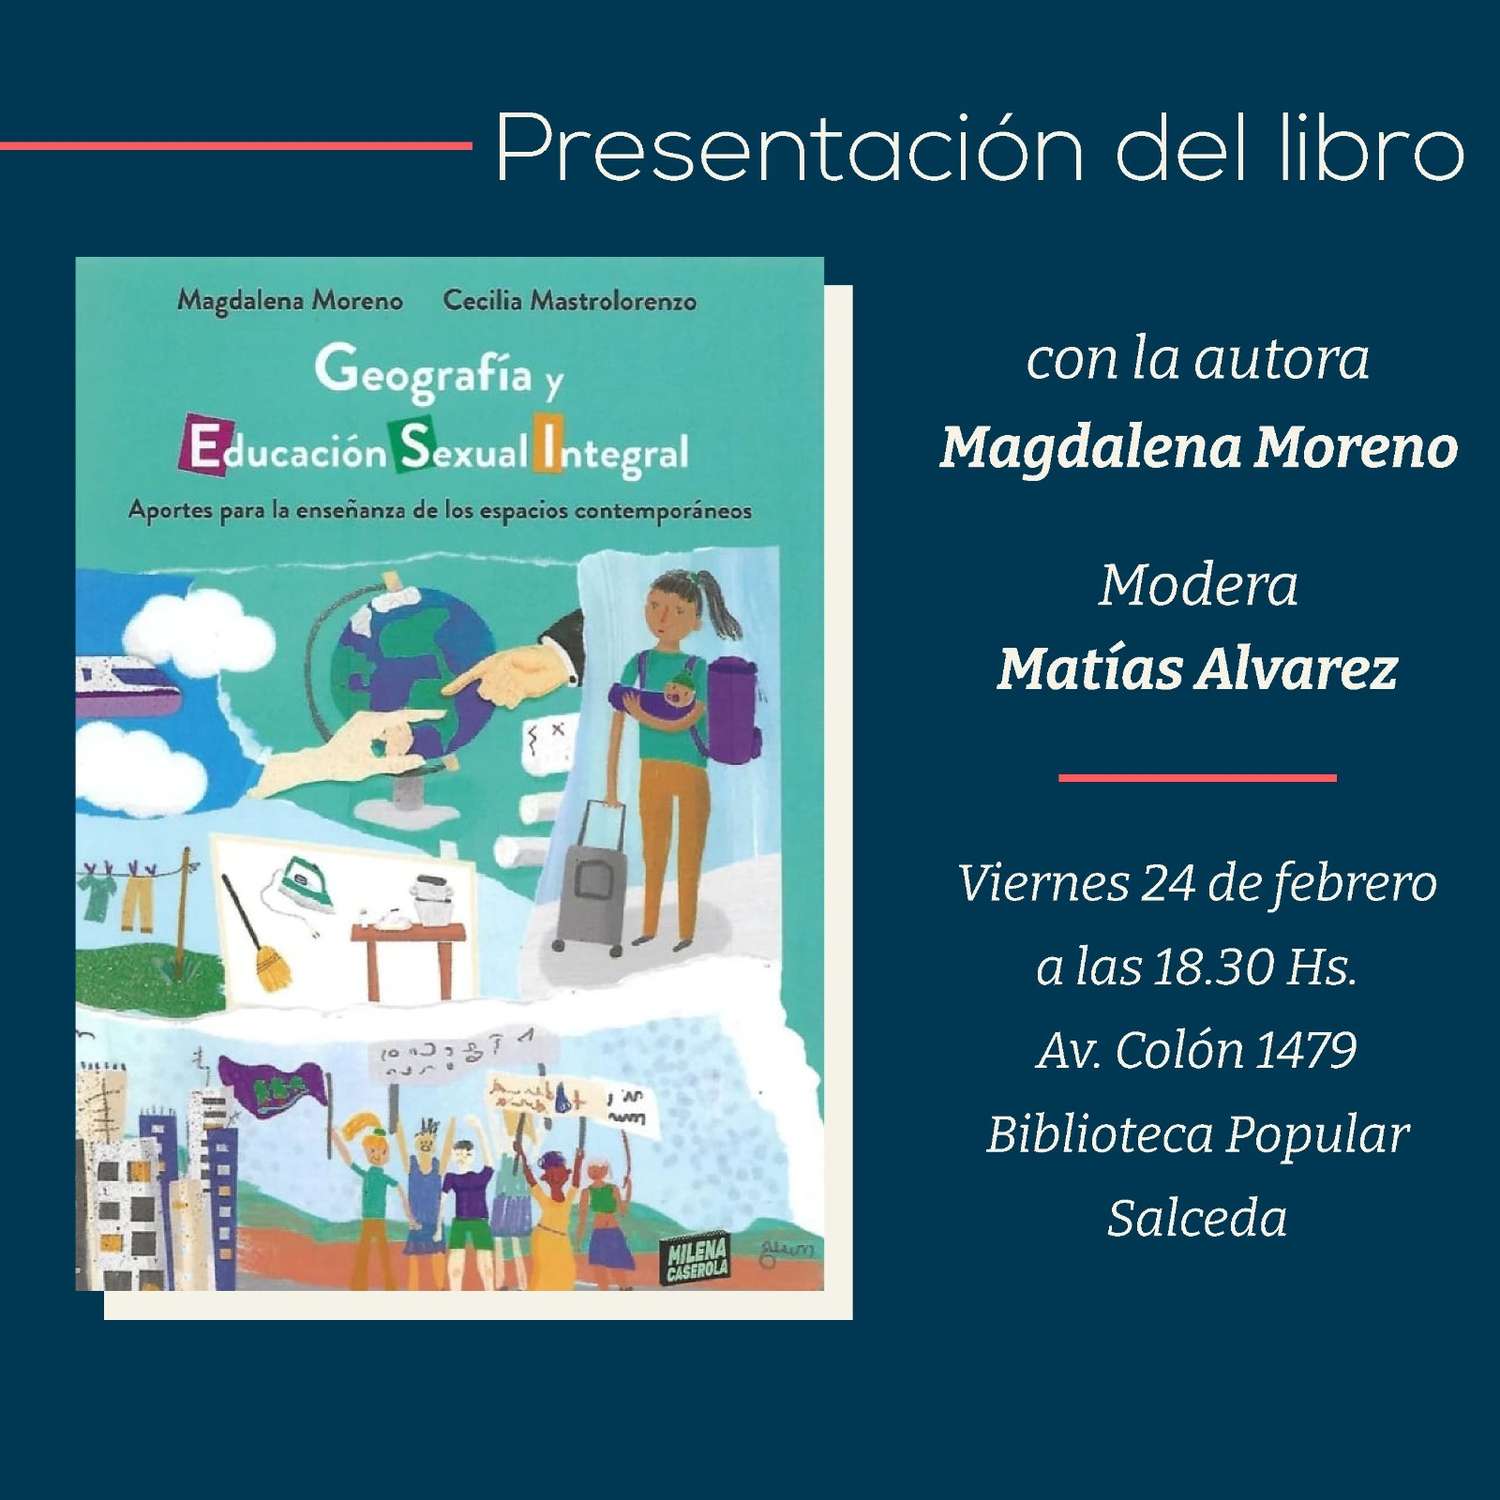 Presentan el libro “Geografía y Educación Sexual Integral" en la Biblioteca Salceda